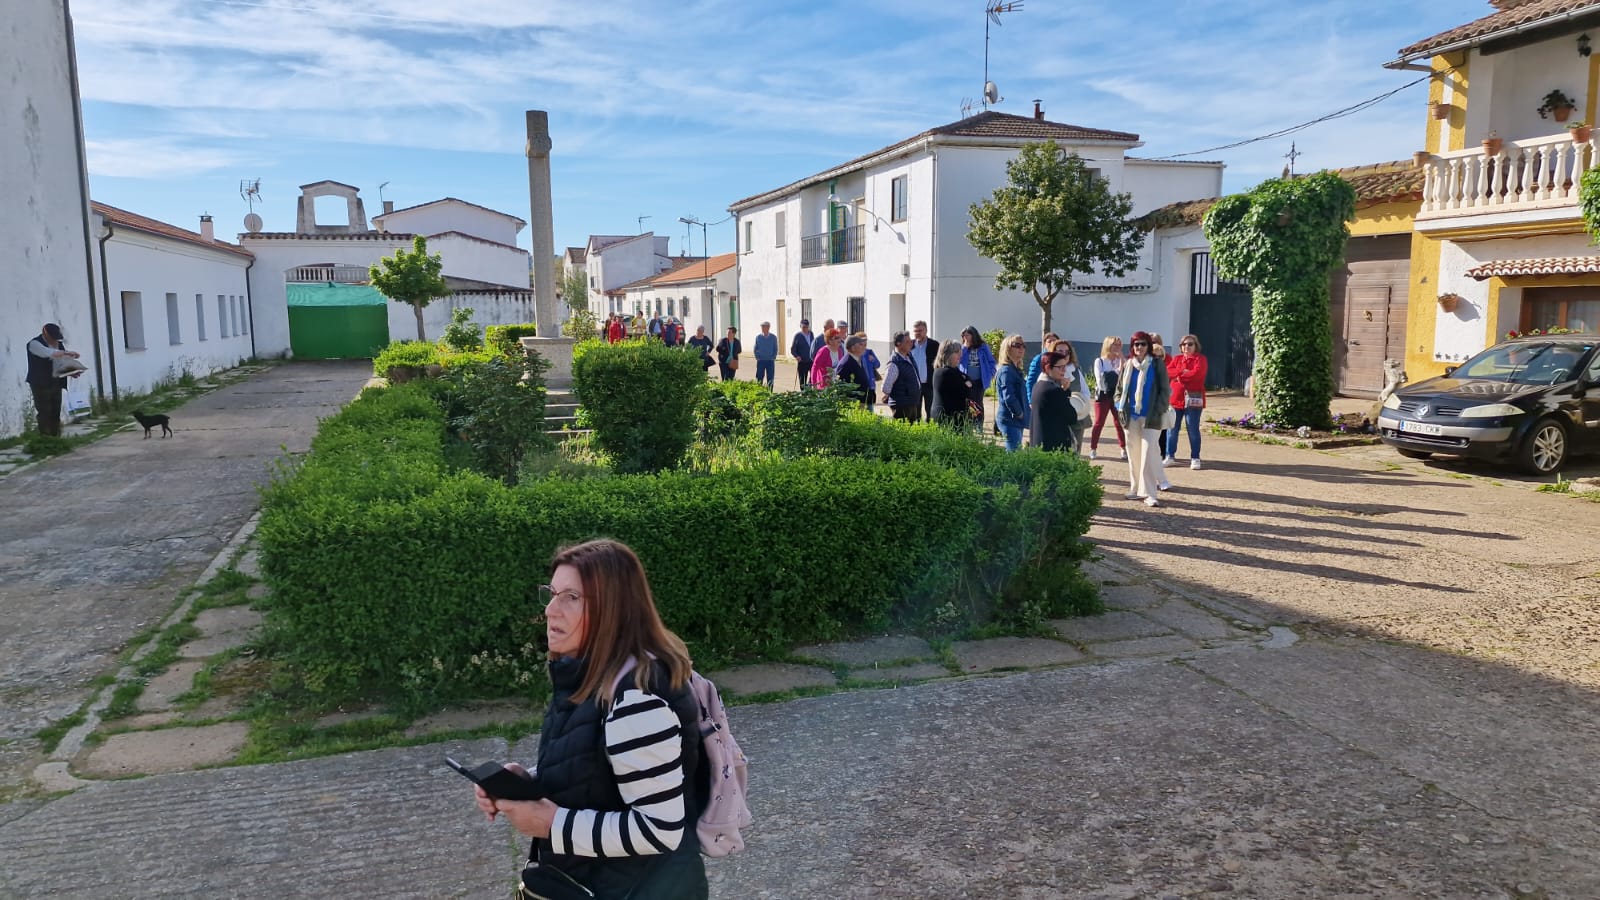 Habitantes de los pueblos de colonización del área de Machacón se encuentran hoy de visita a los núcleos de Águeda, Sanjuanejo, Ivanrey, arrabal de San Sebastián y Conejera